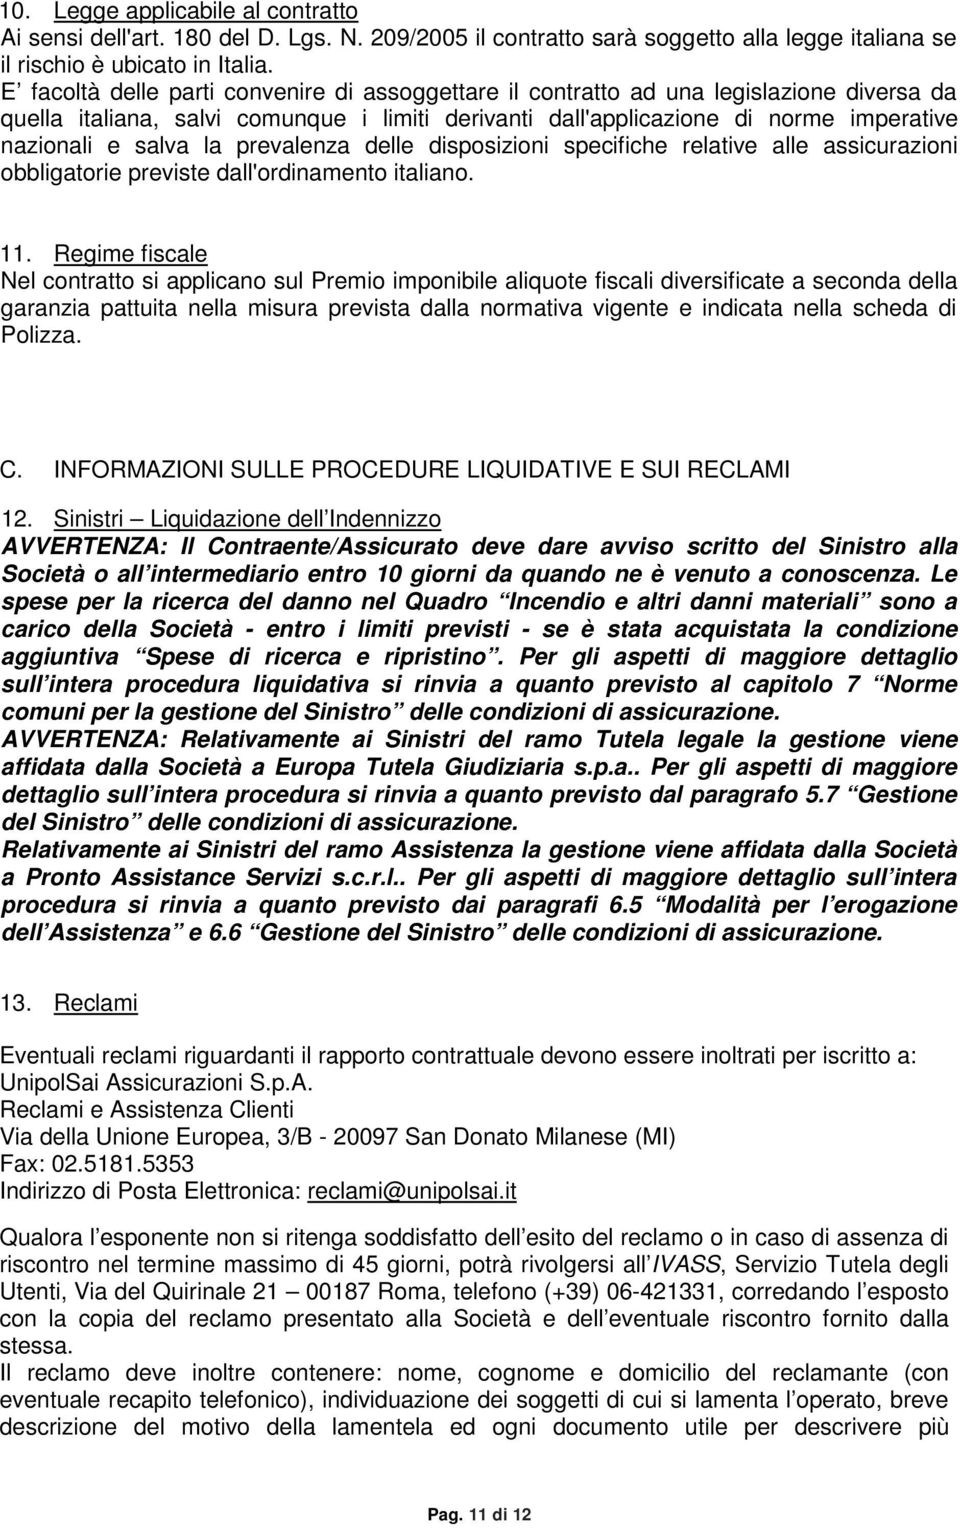 la prevalenza delle disposizioni specifiche relative alle assicurazioni obbligatorie previste dall'ordinamento italiano. 11.